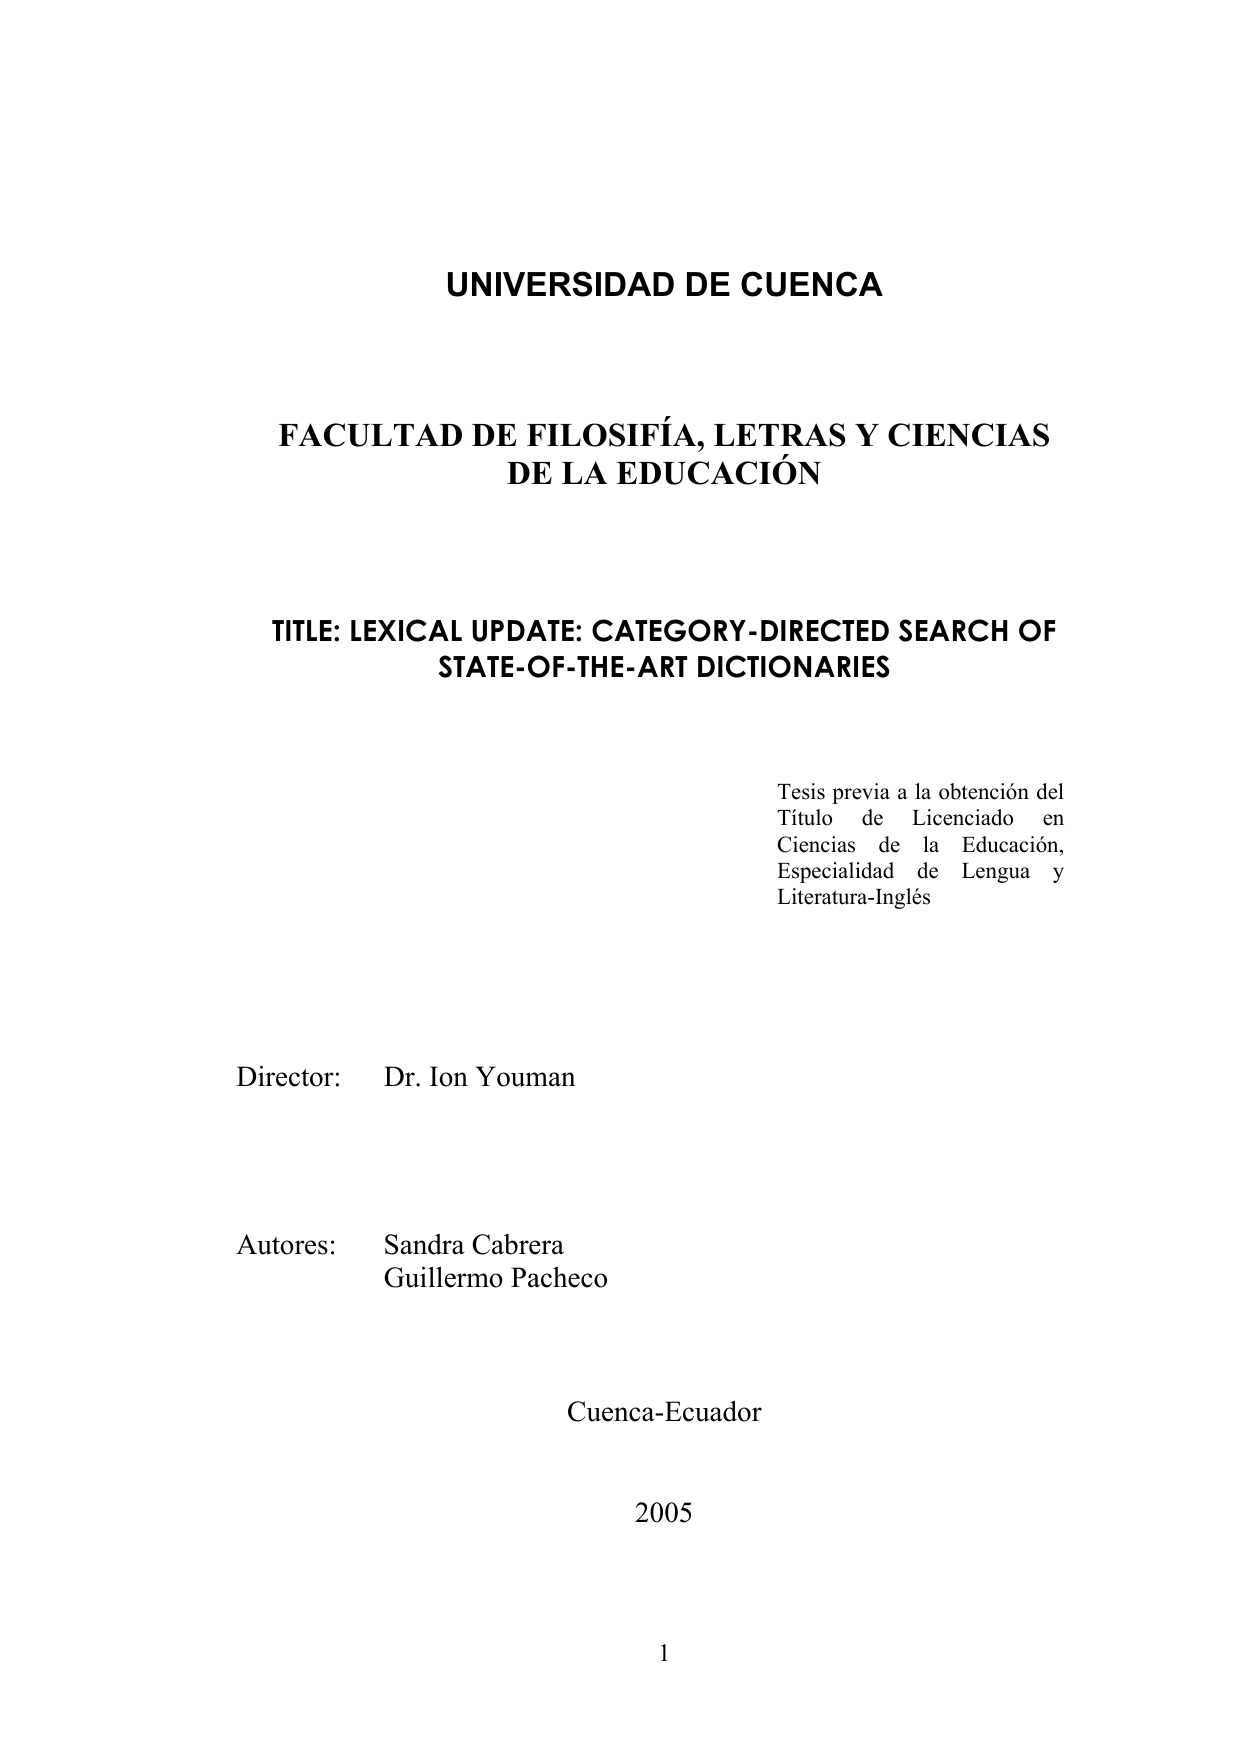 Hmo Daddy Spreadsheet with Universidad De Cuenca Facultad De Filosifía, Letras Y Ciencias De La